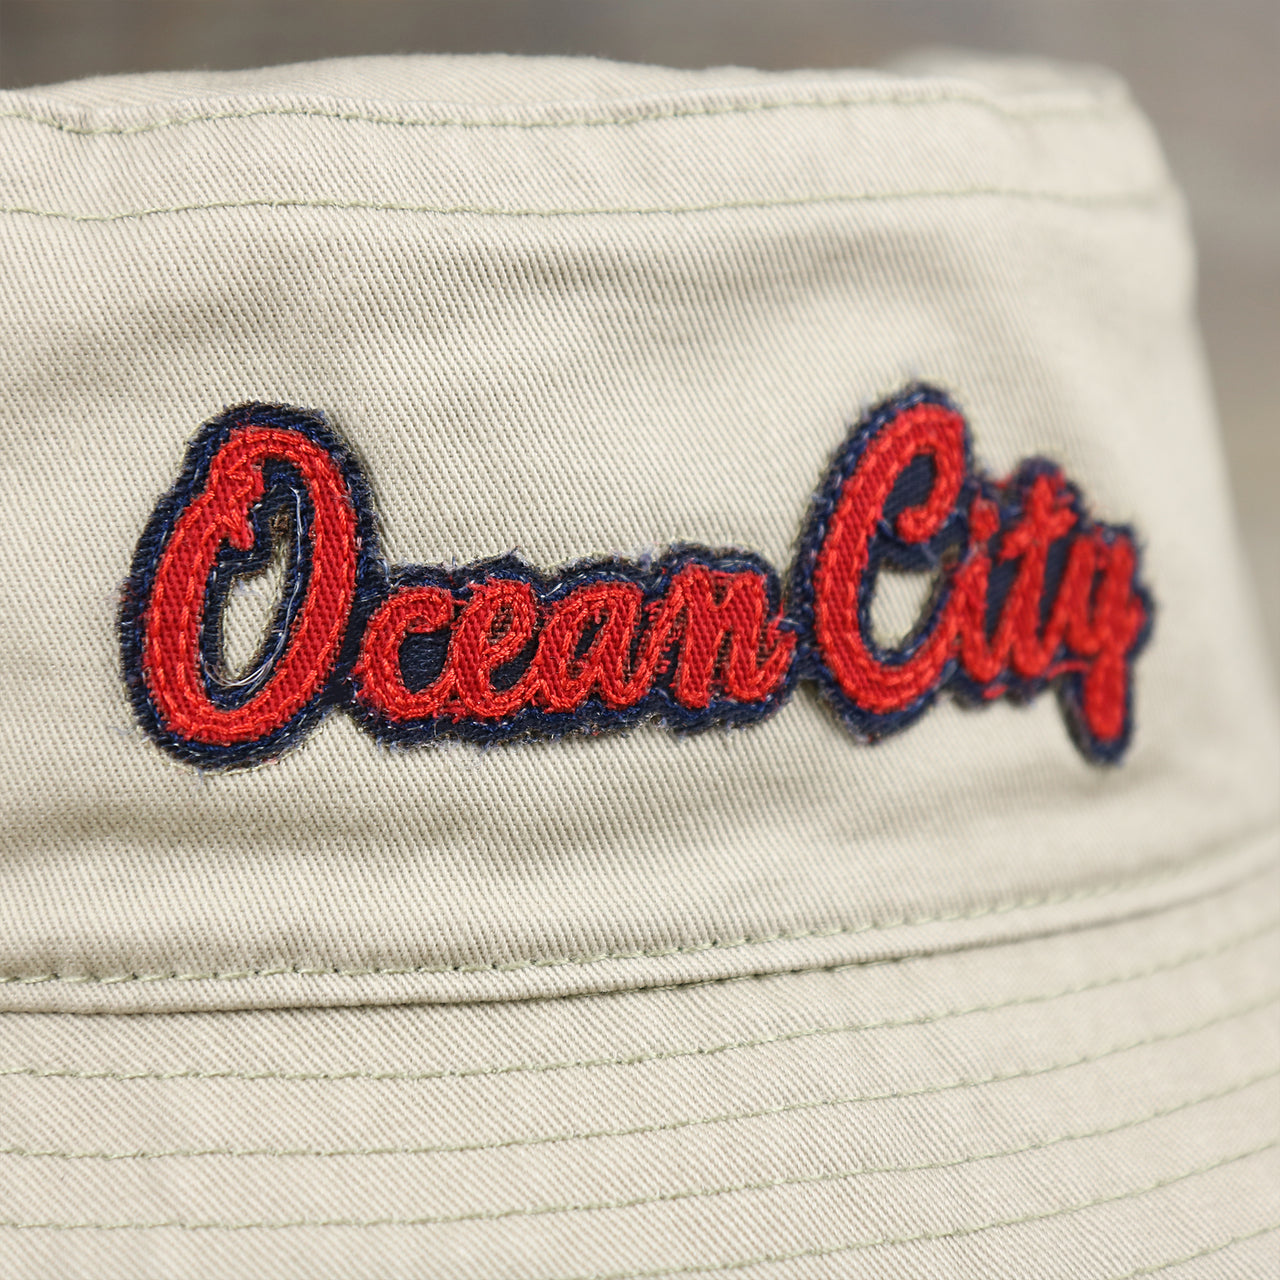 The Ocean City Wordmark on the Red OCNJ Double Wordmark Navy Blue Outline Bucket Hat | Khaki Bucket Hat